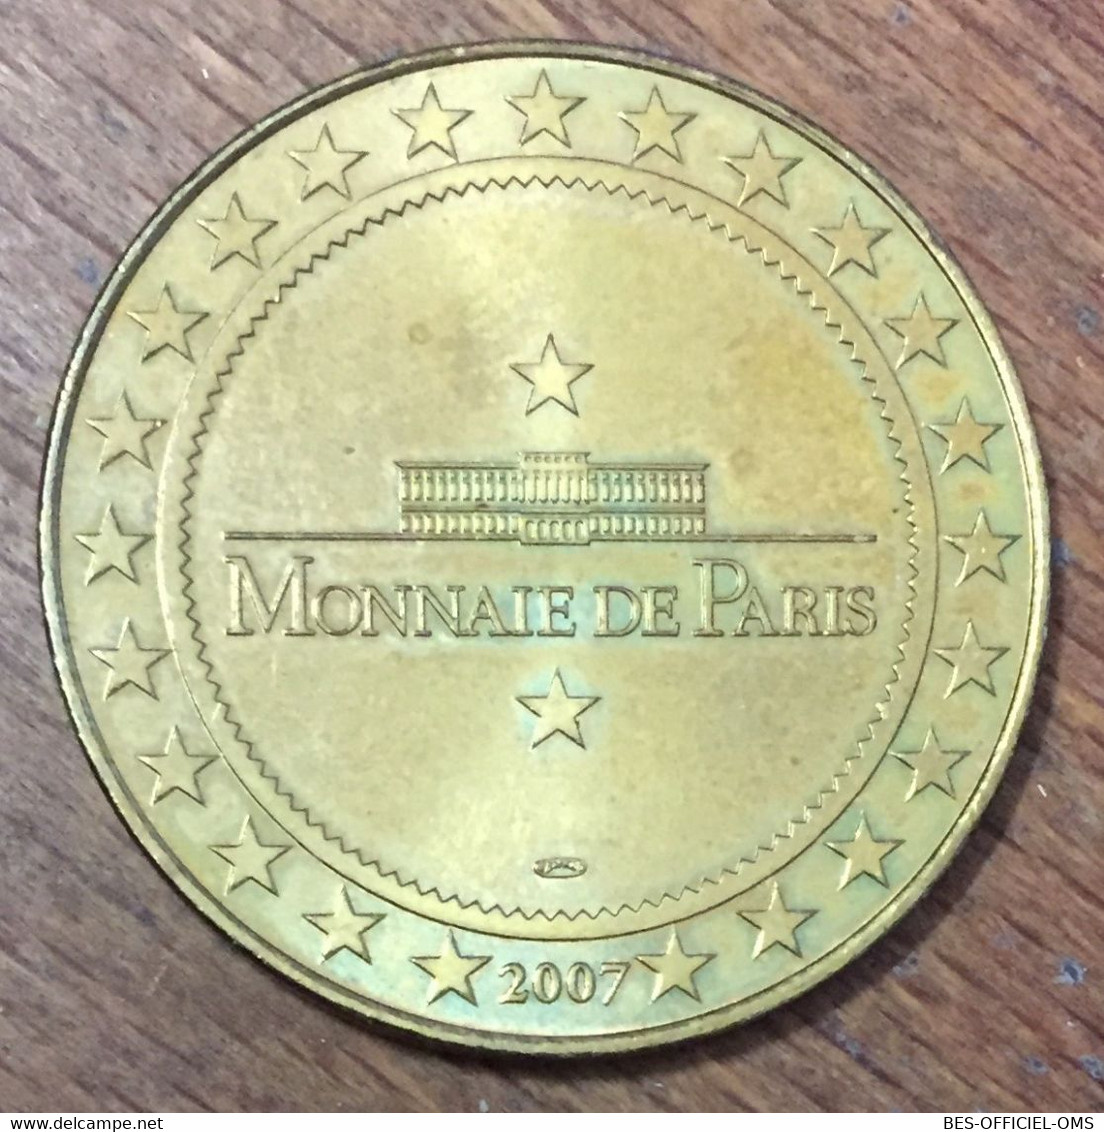 21 HOSPICES DE BEAUNE MDP 2007 MÉDAILLE SOUVENIR MONNAIE DE PARIS JETON TOURISTIQUE MEDALS COINS TOKENS - 2007